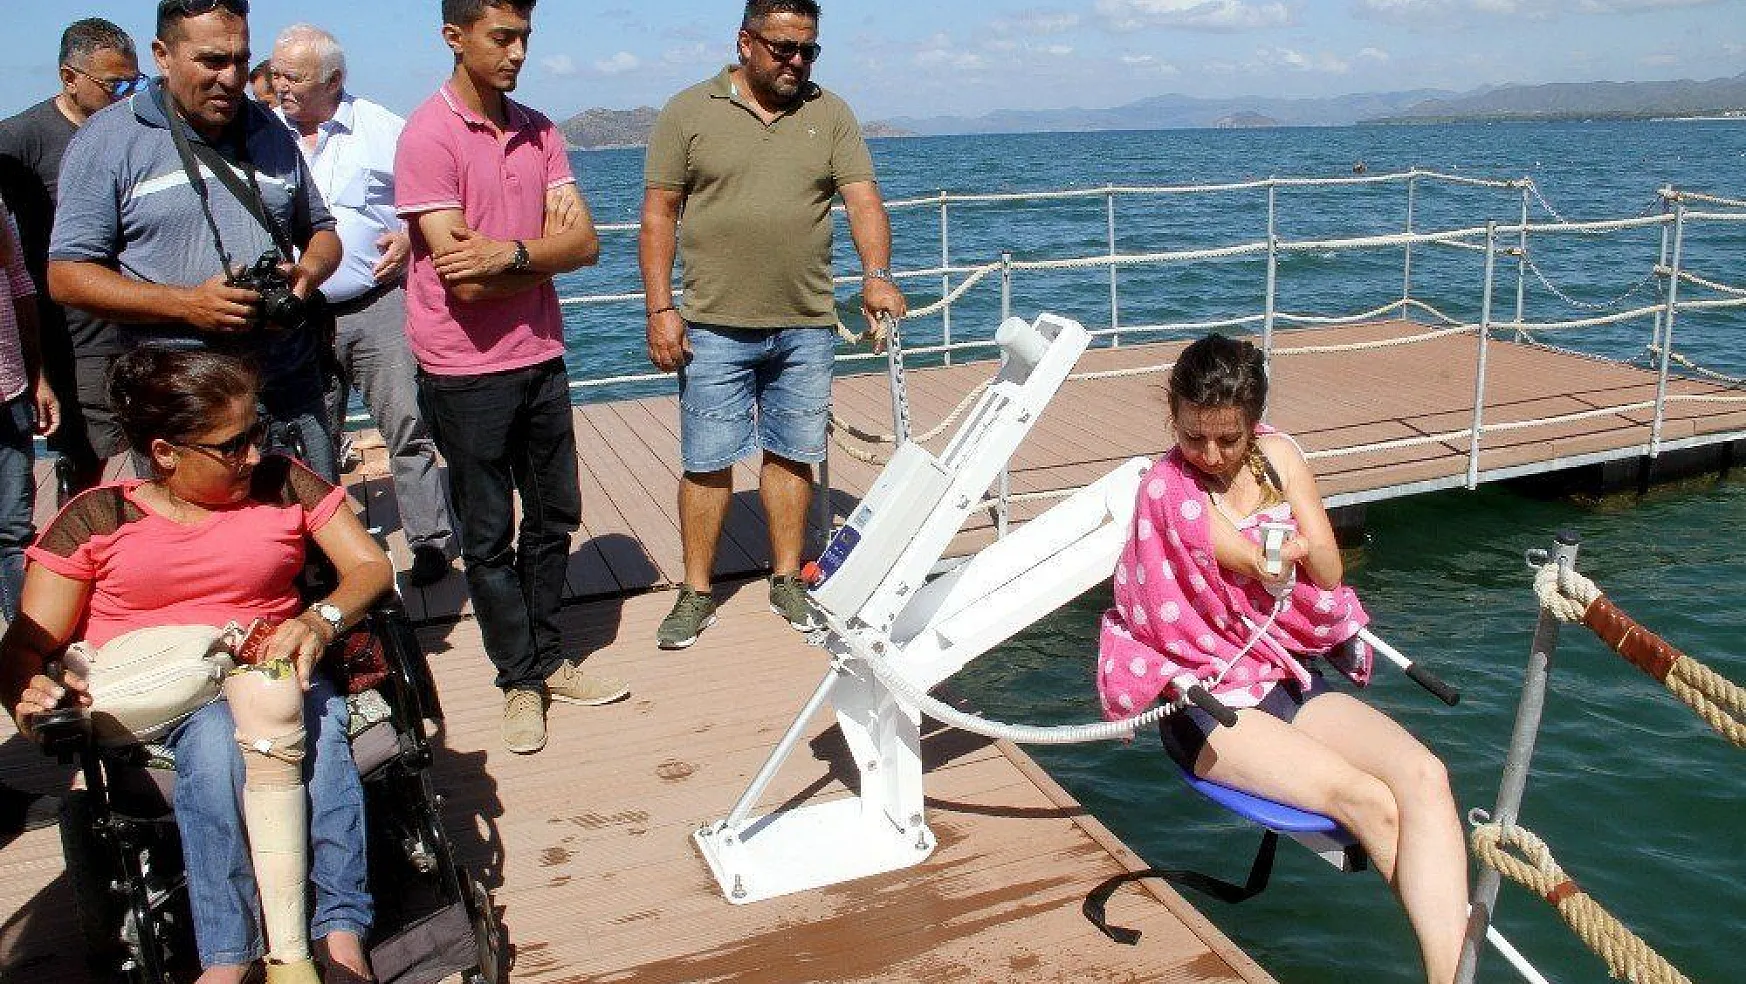 Engelliler için yüzer güneşlenme terası yapıldı (video)